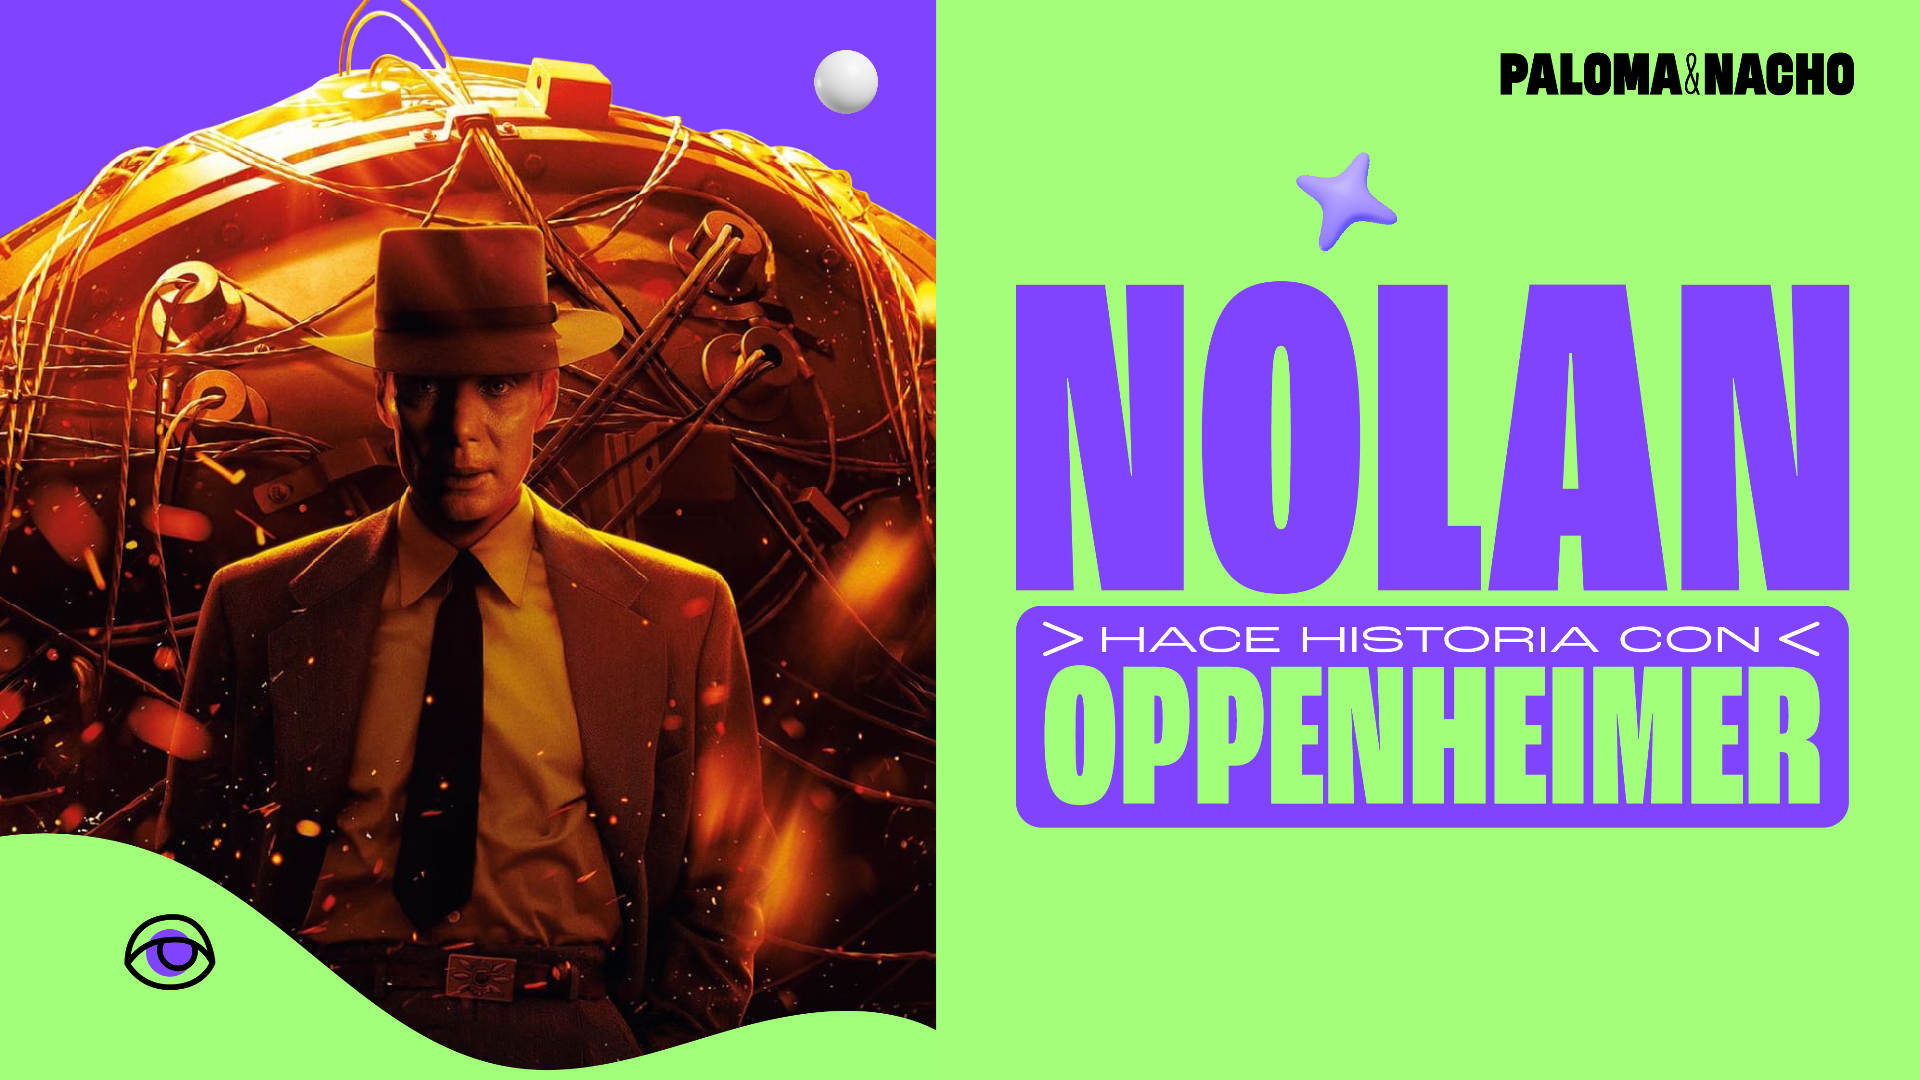 Christopher Nolan hace historia con Oppenheimer